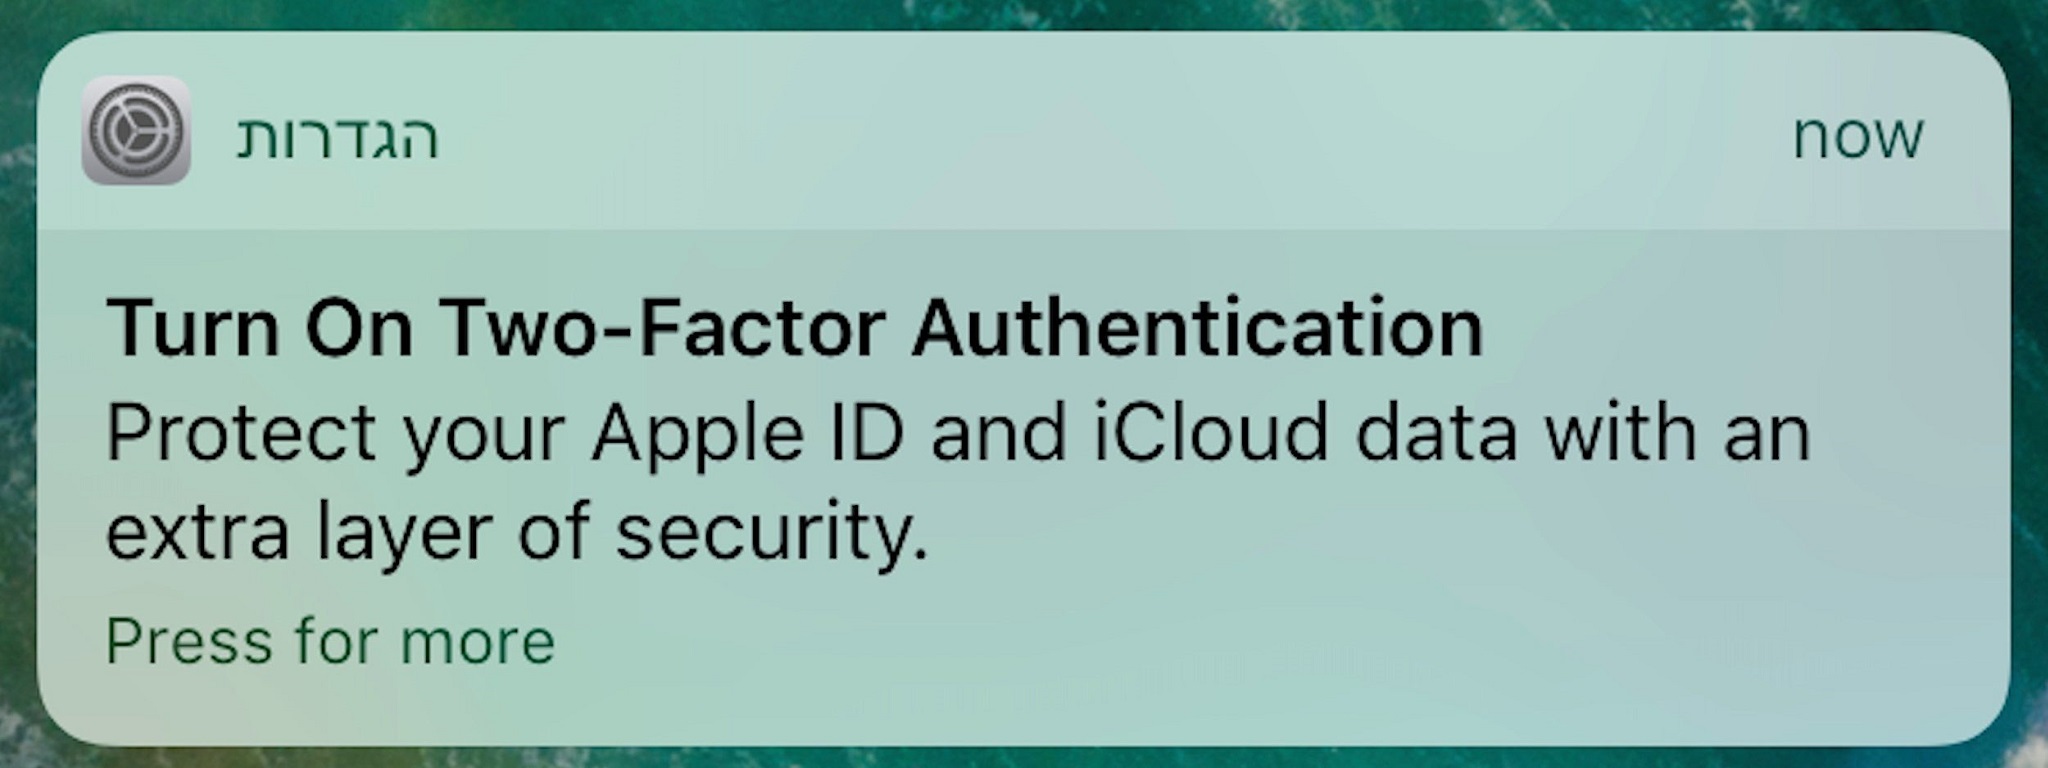 Apple gởi thông báo nhắc người dùng iOS 10.3 beta bật bảo mật 2 lớp